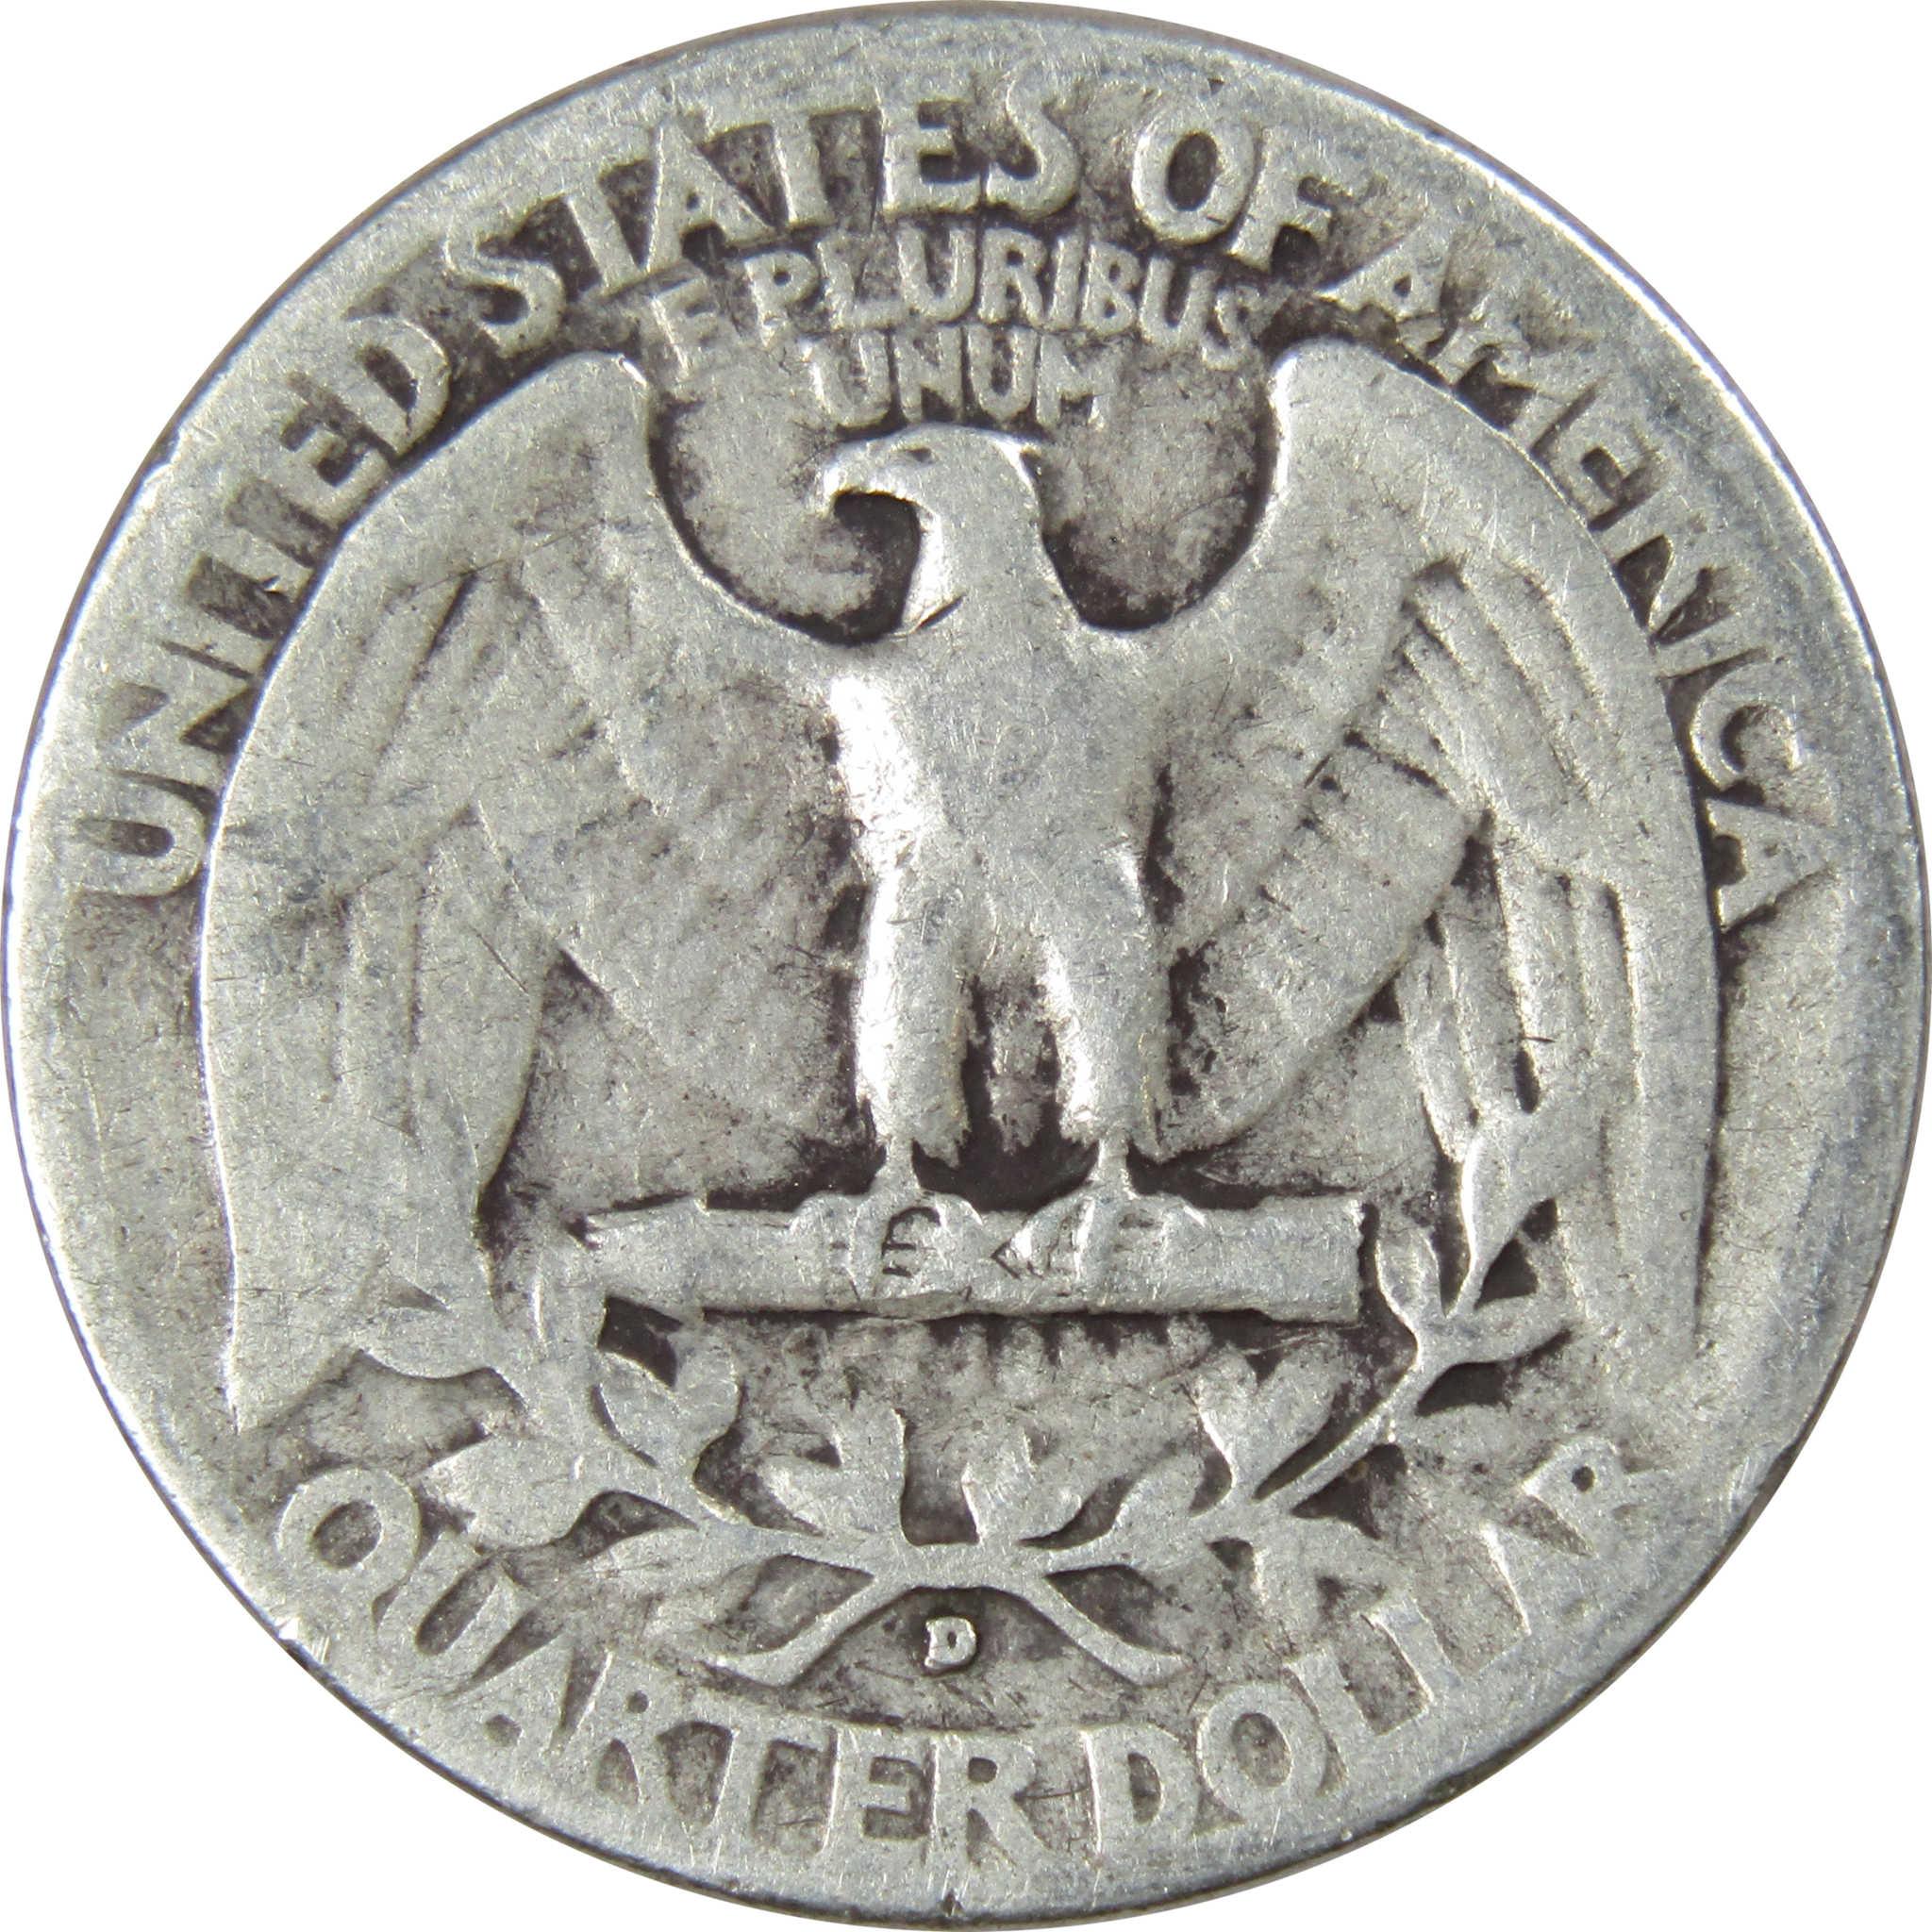 1942 D Washington Quarter AG About Good 90% Silver 25c US Coin Collectible